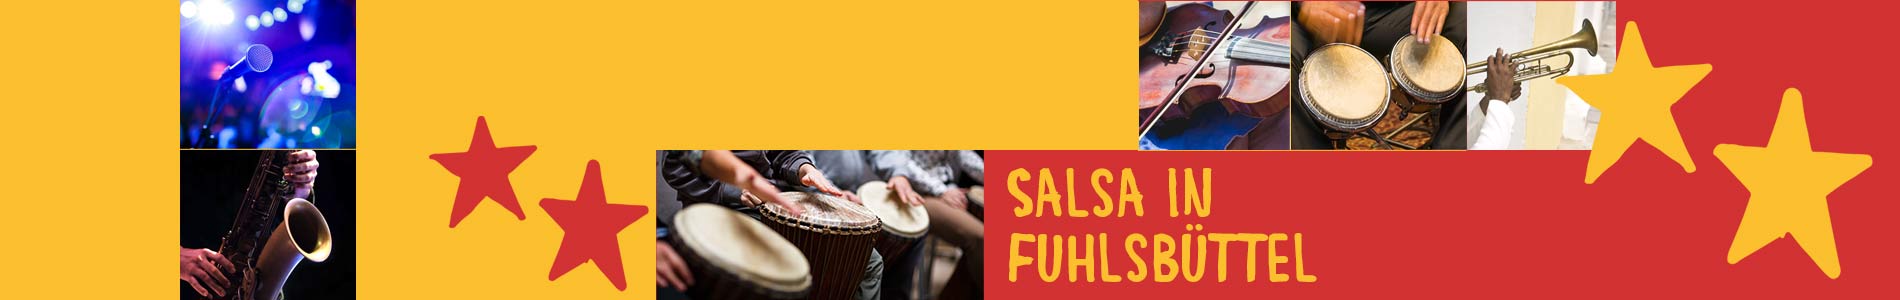 Salsa in Fuhlsbüttel – Salsa lernen und tanzen, Tanzkurse, Partys, Veranstaltungen